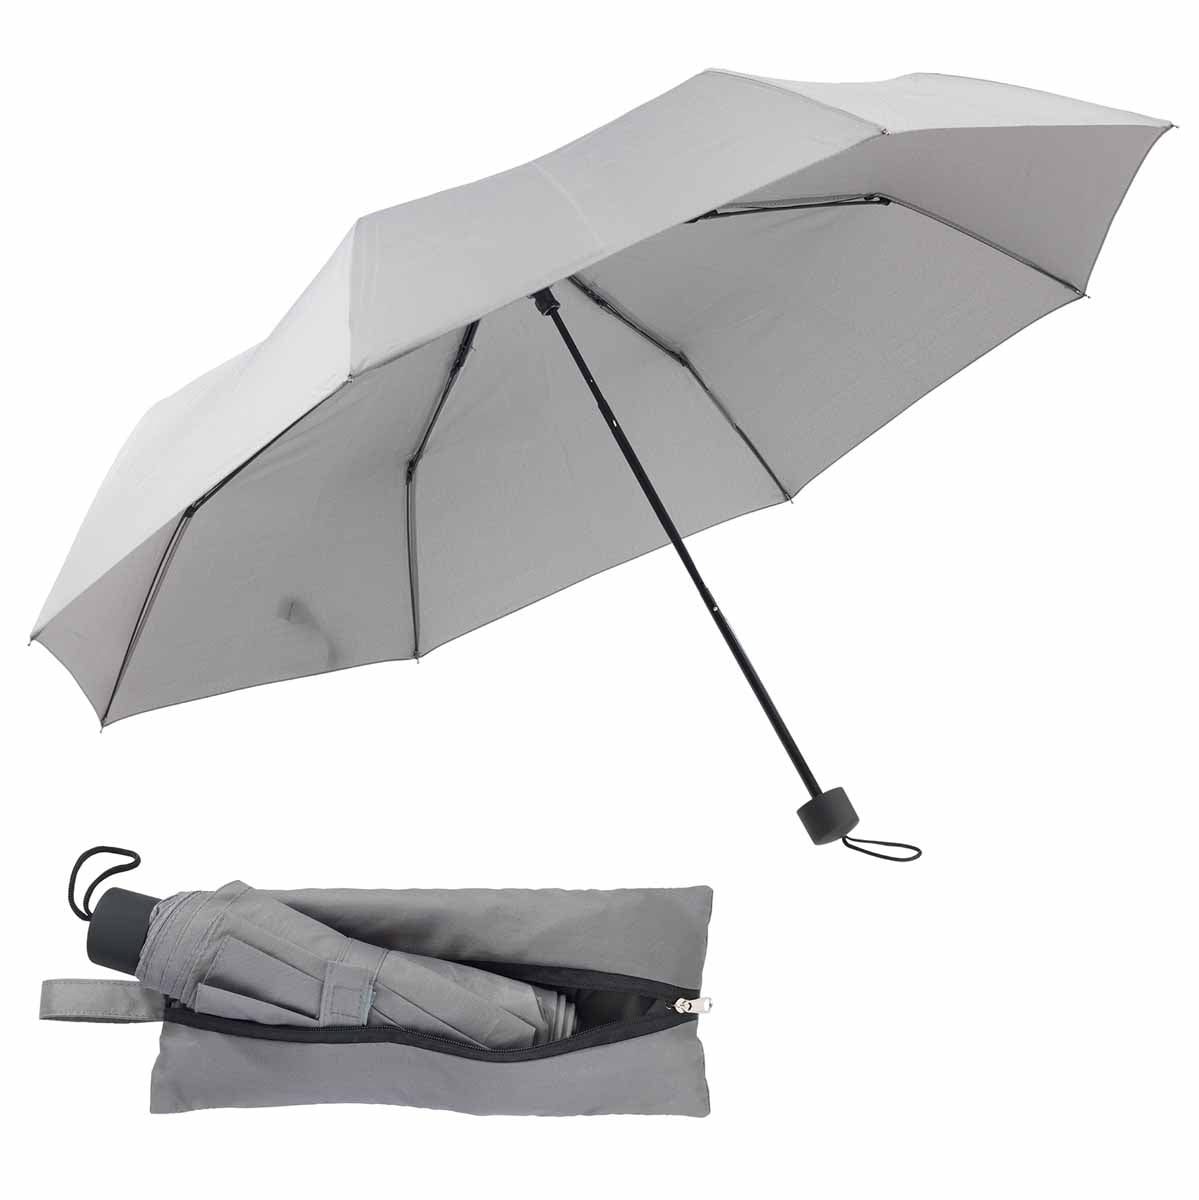 Der Pocket Umbrella 2in1 - Ein praktisches Duo für Handtasche, Rucksack und  mehr!